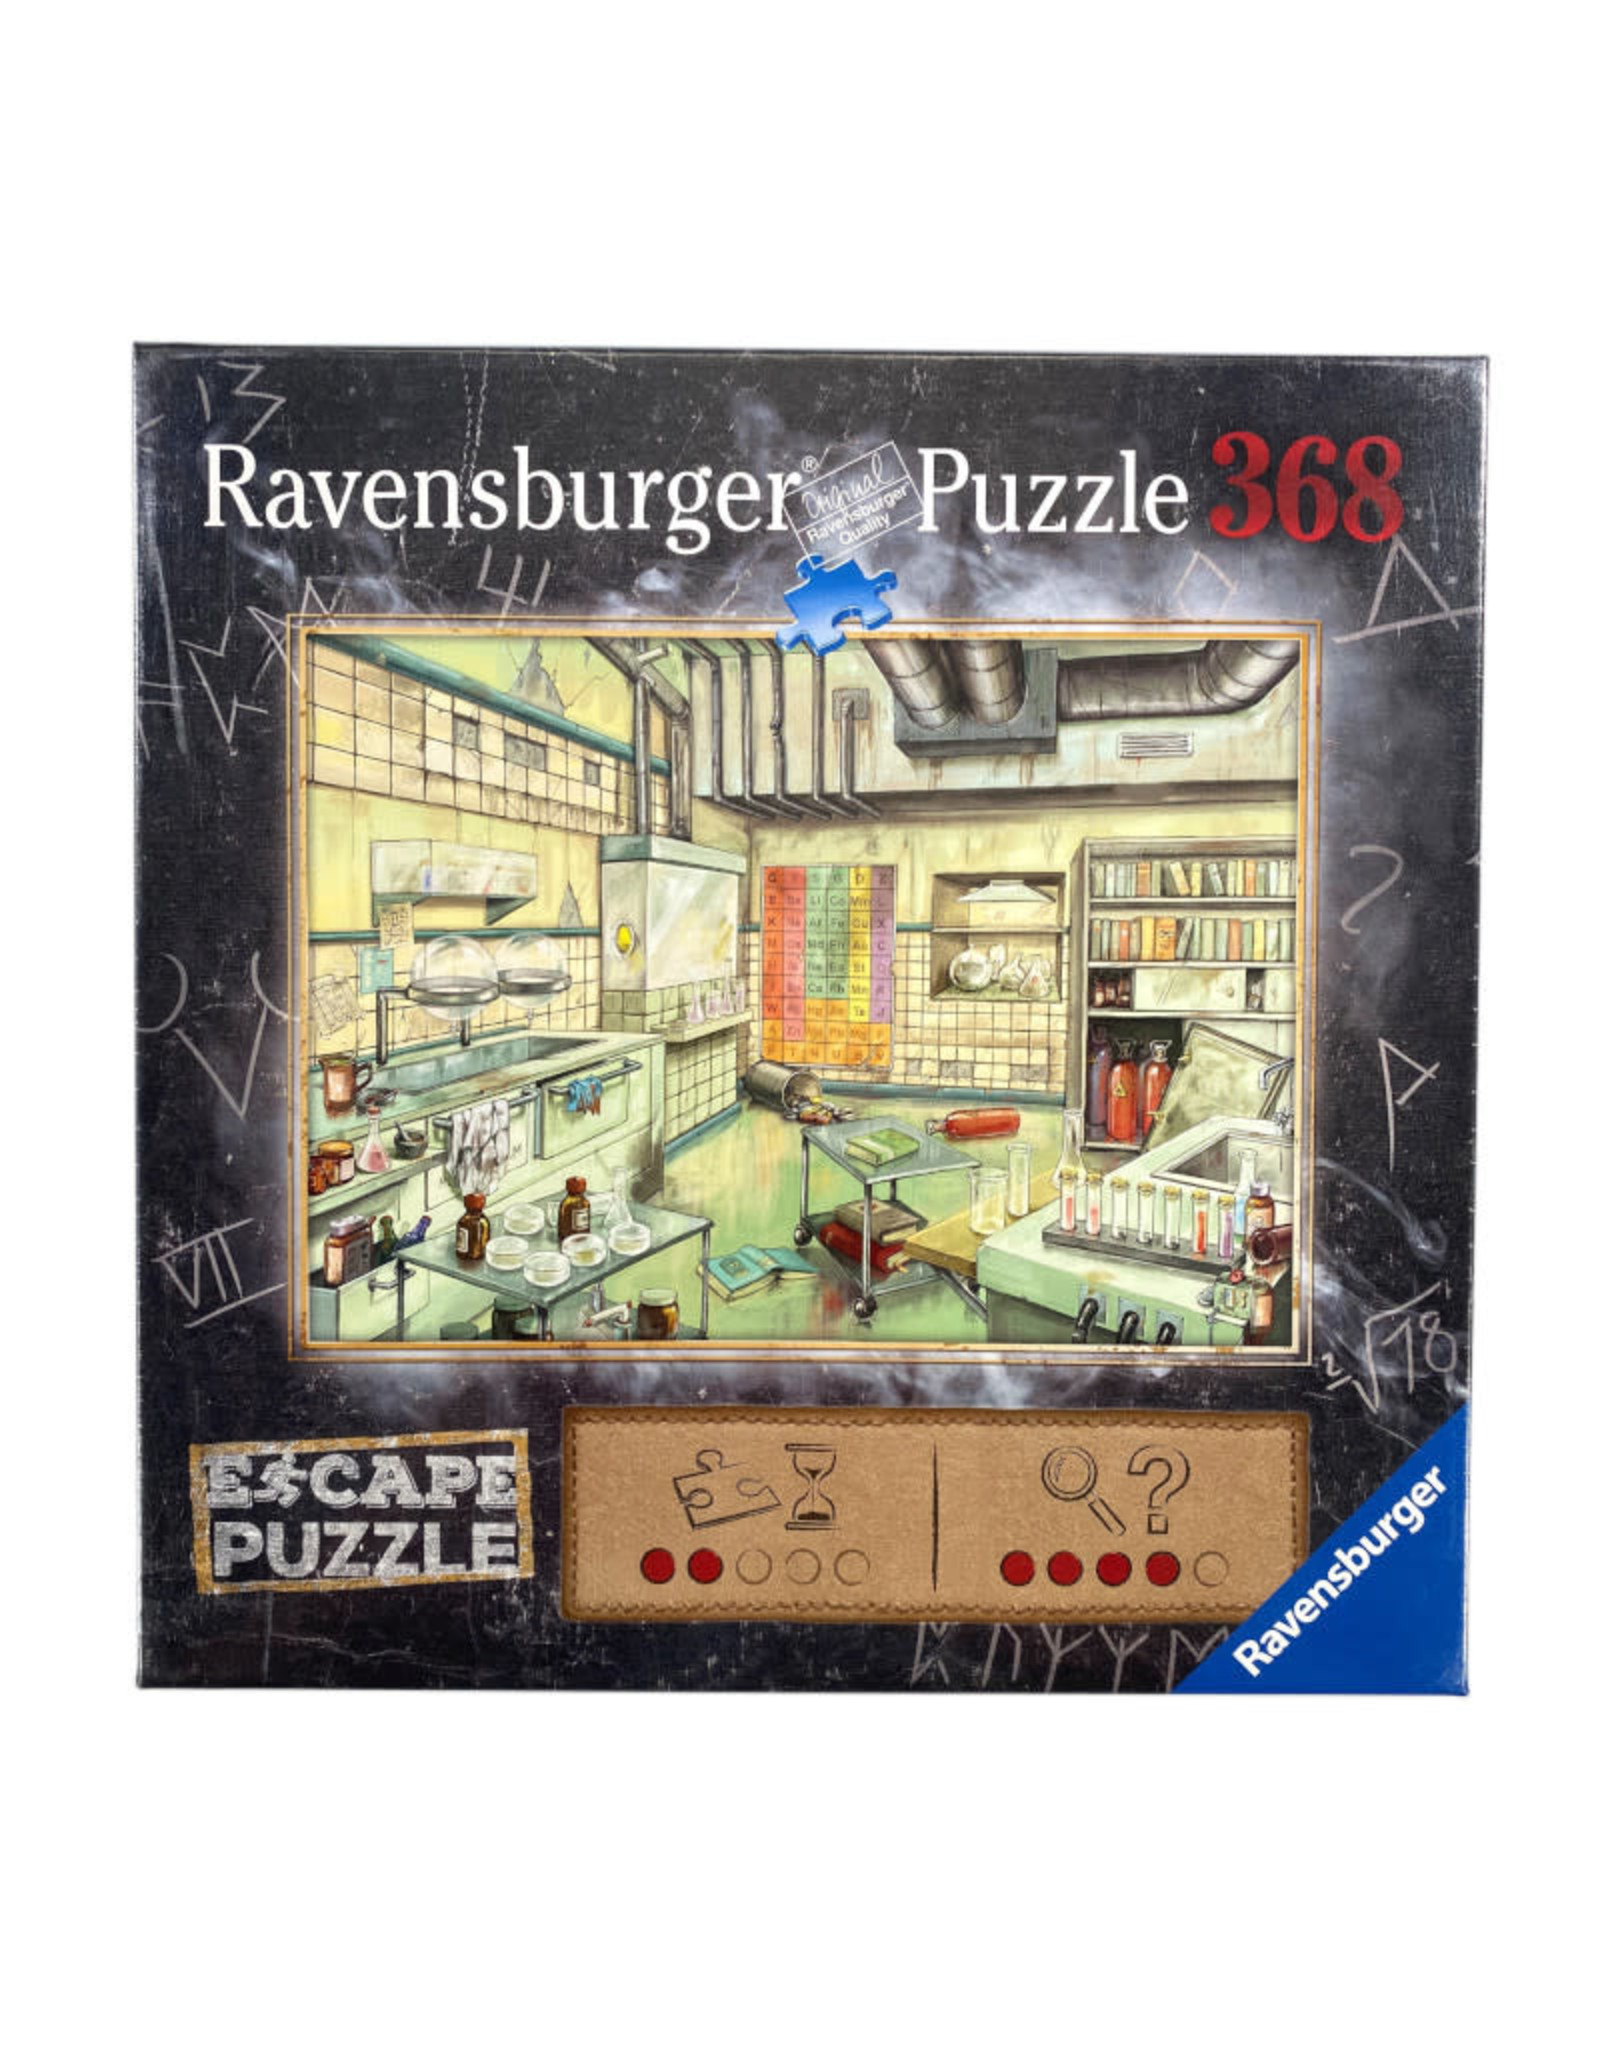 Ravensburger ESCAPE Puzzle Laboratory (368 PCS)